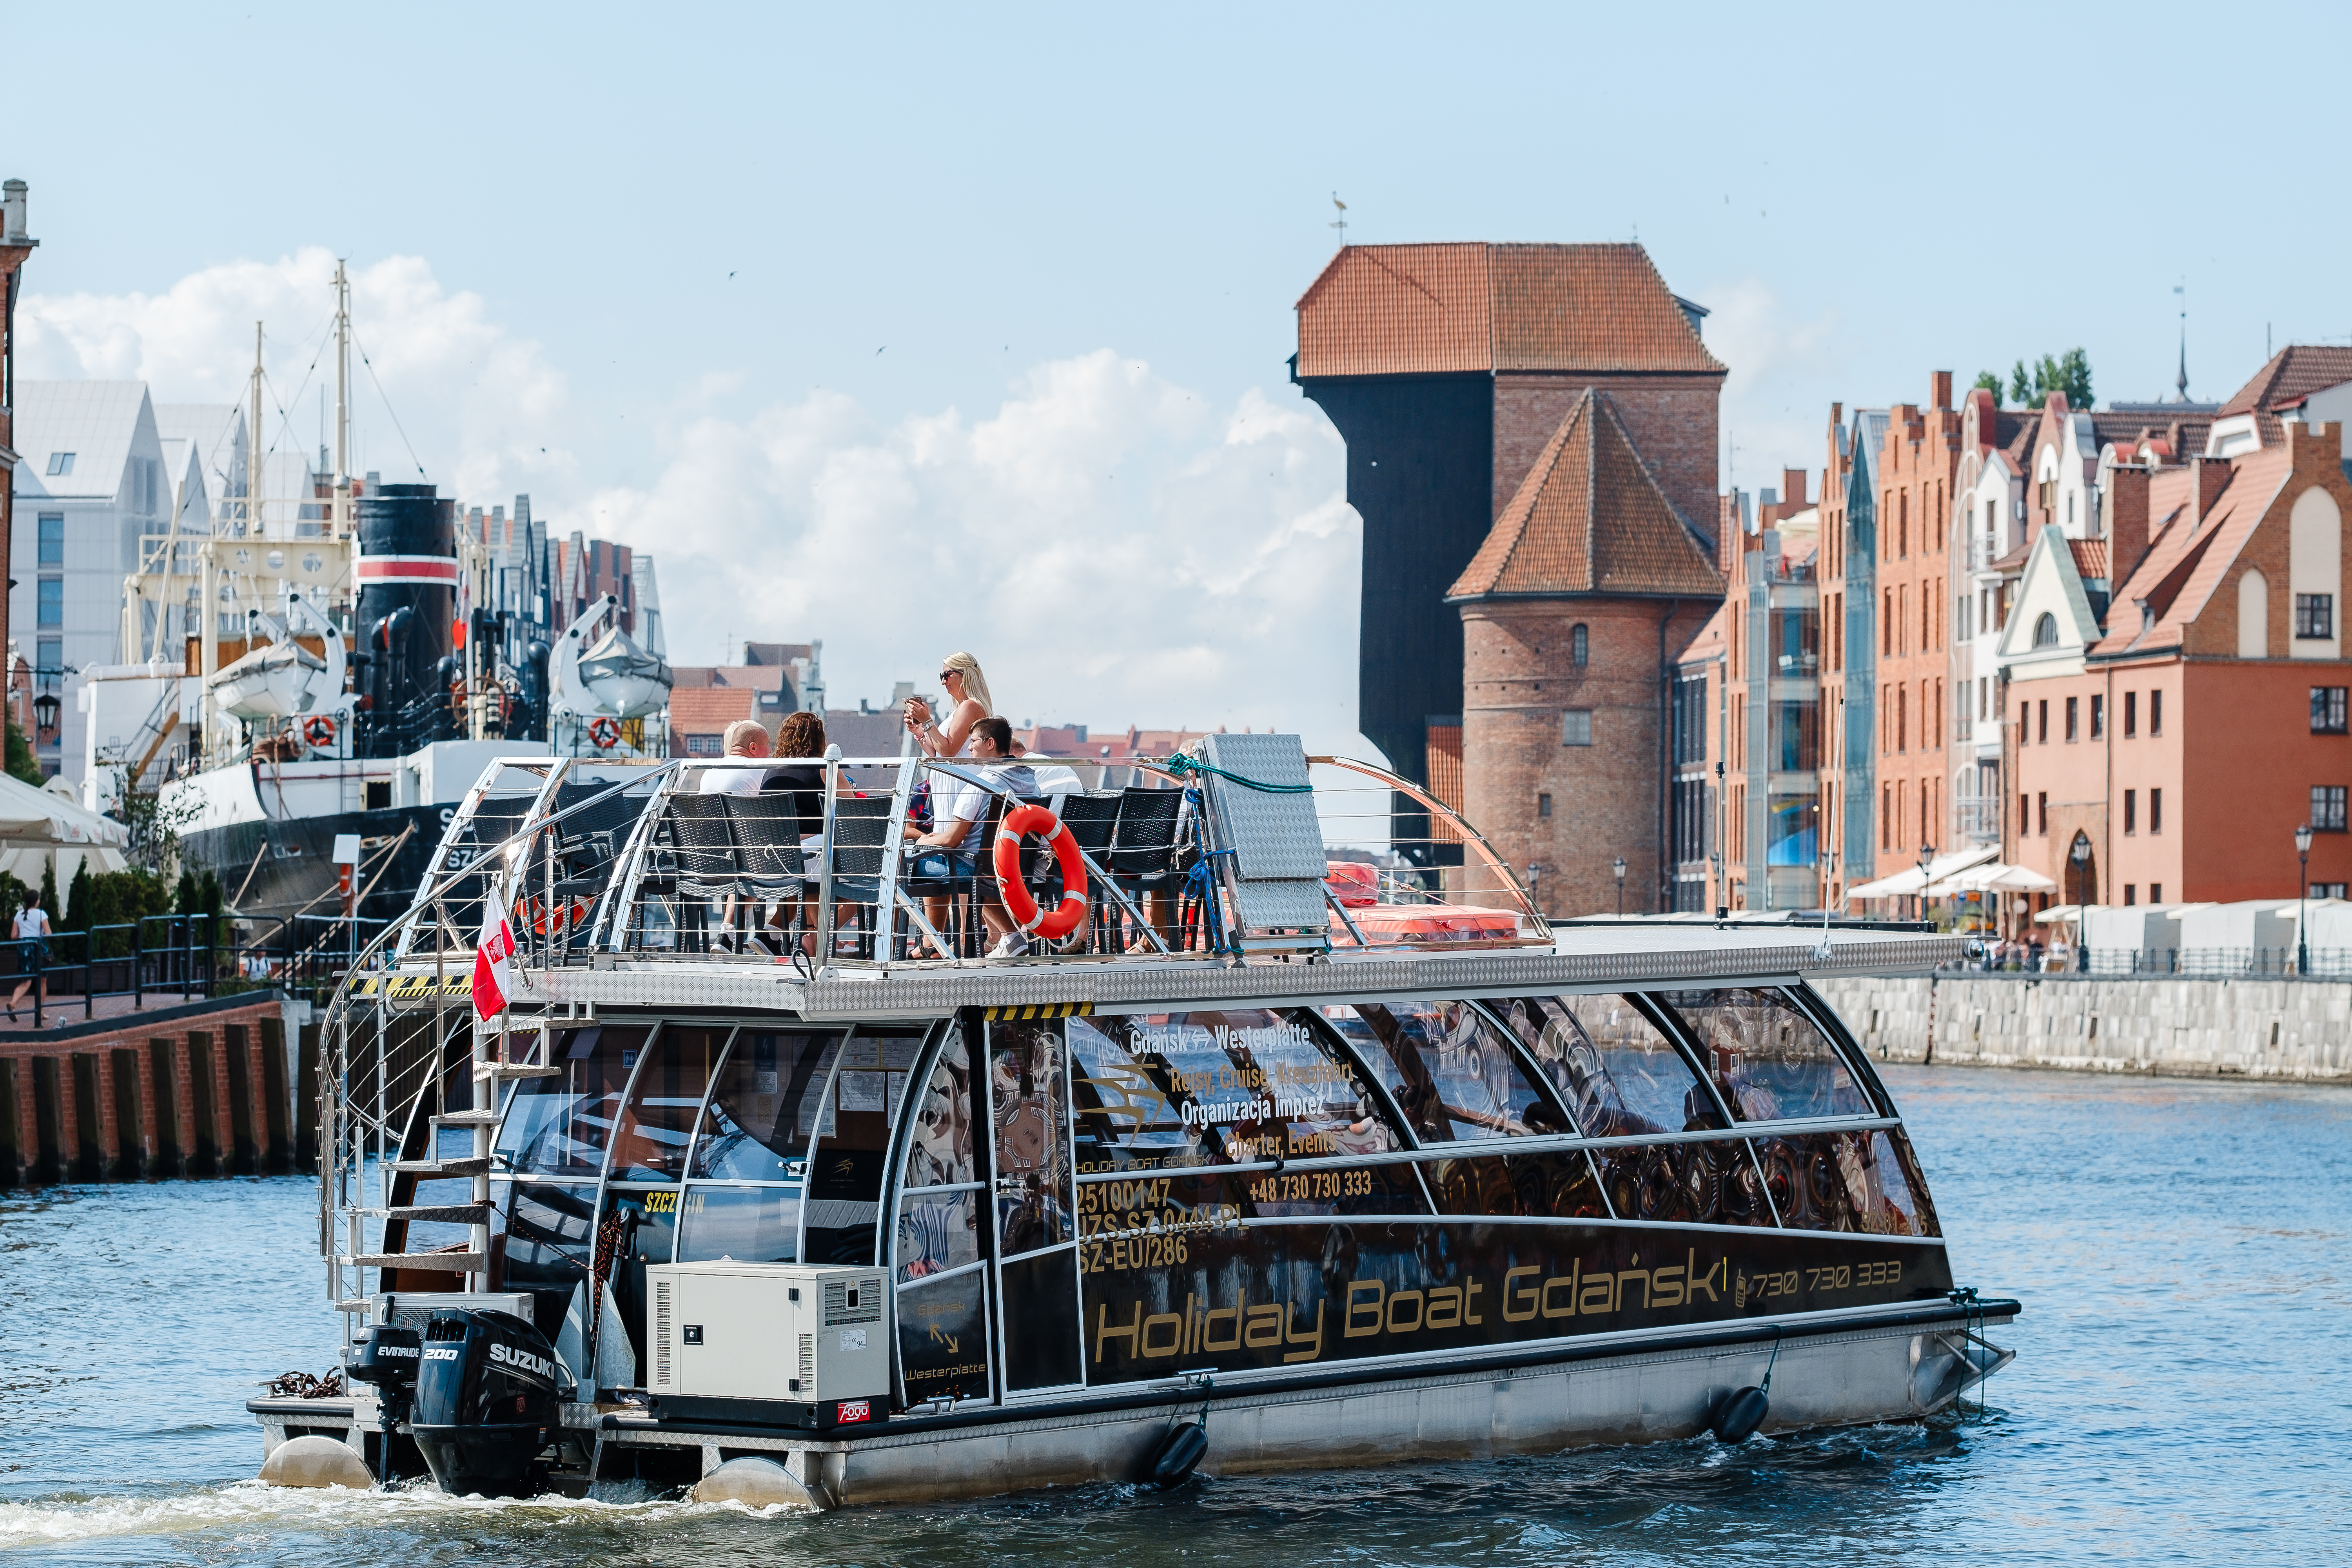 Holiday Boat Gdańsk - Zobacz więcej